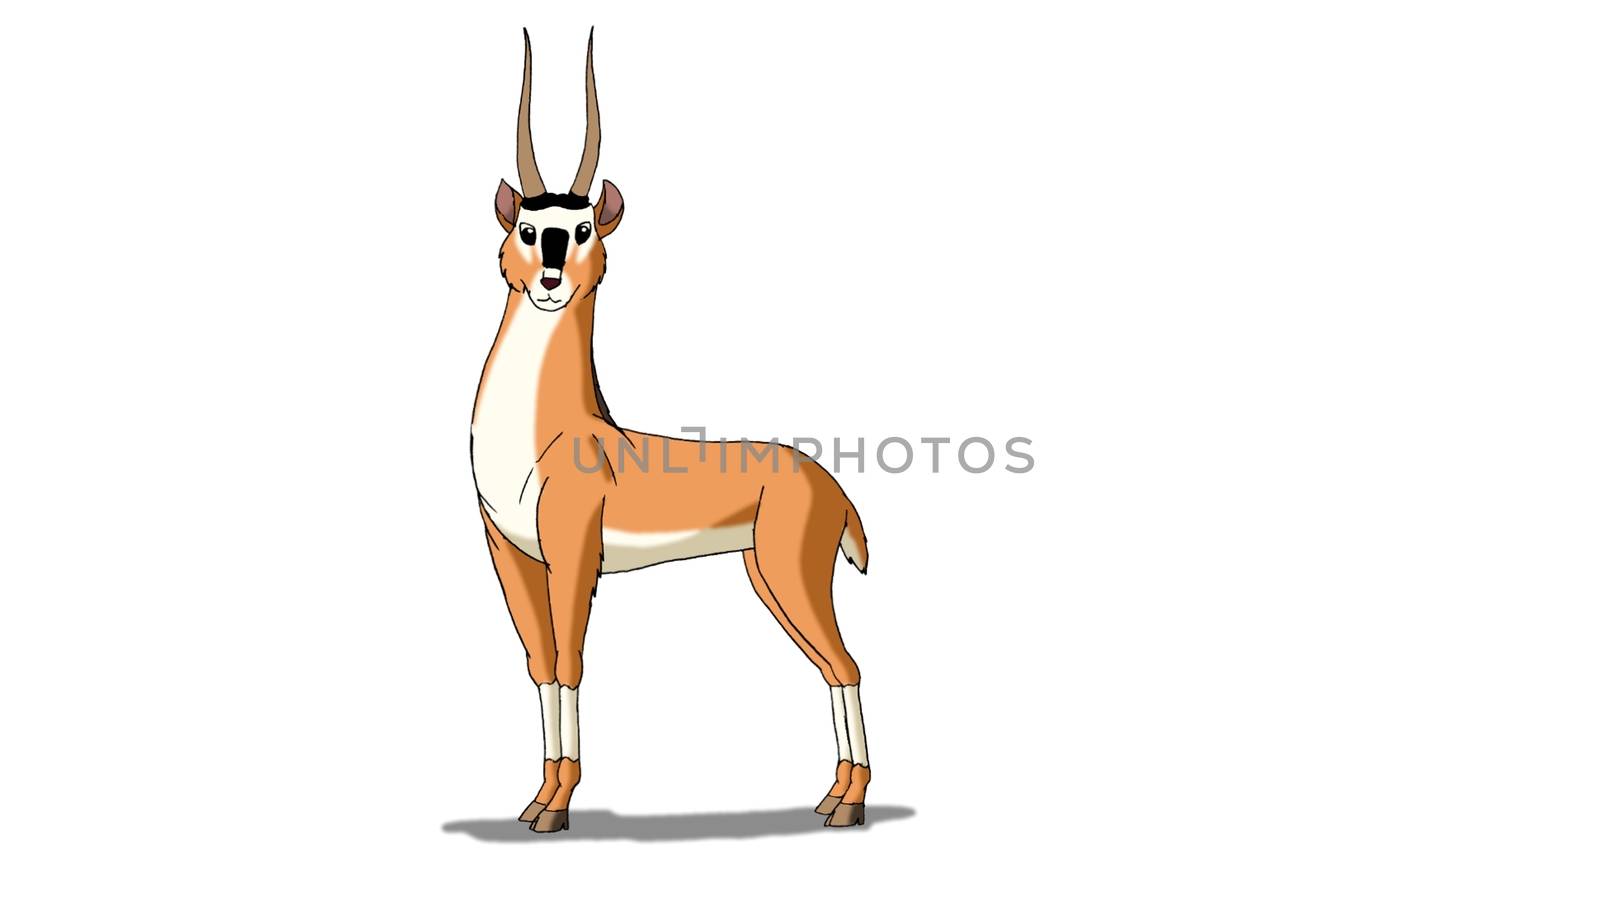 Antelope (Gazelle) Isolated on White Background by Multipedia